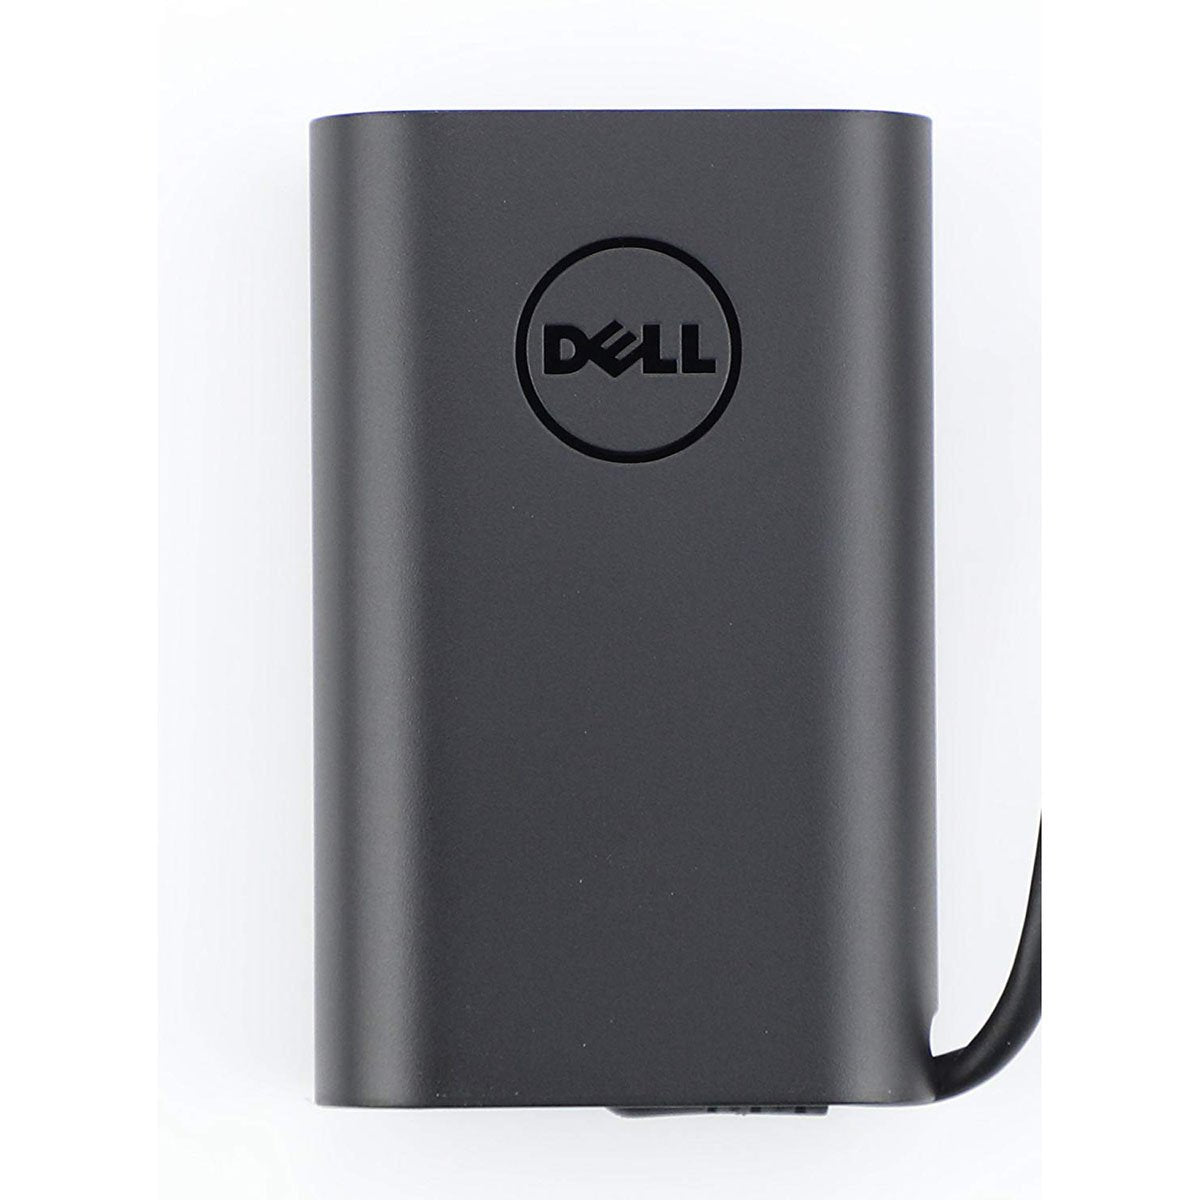 Dell ओरिजिनल 45W 20V USB टाइप C लैपटॉप चार्जर अडैप्टर (कोई पावर केबल नहीं)